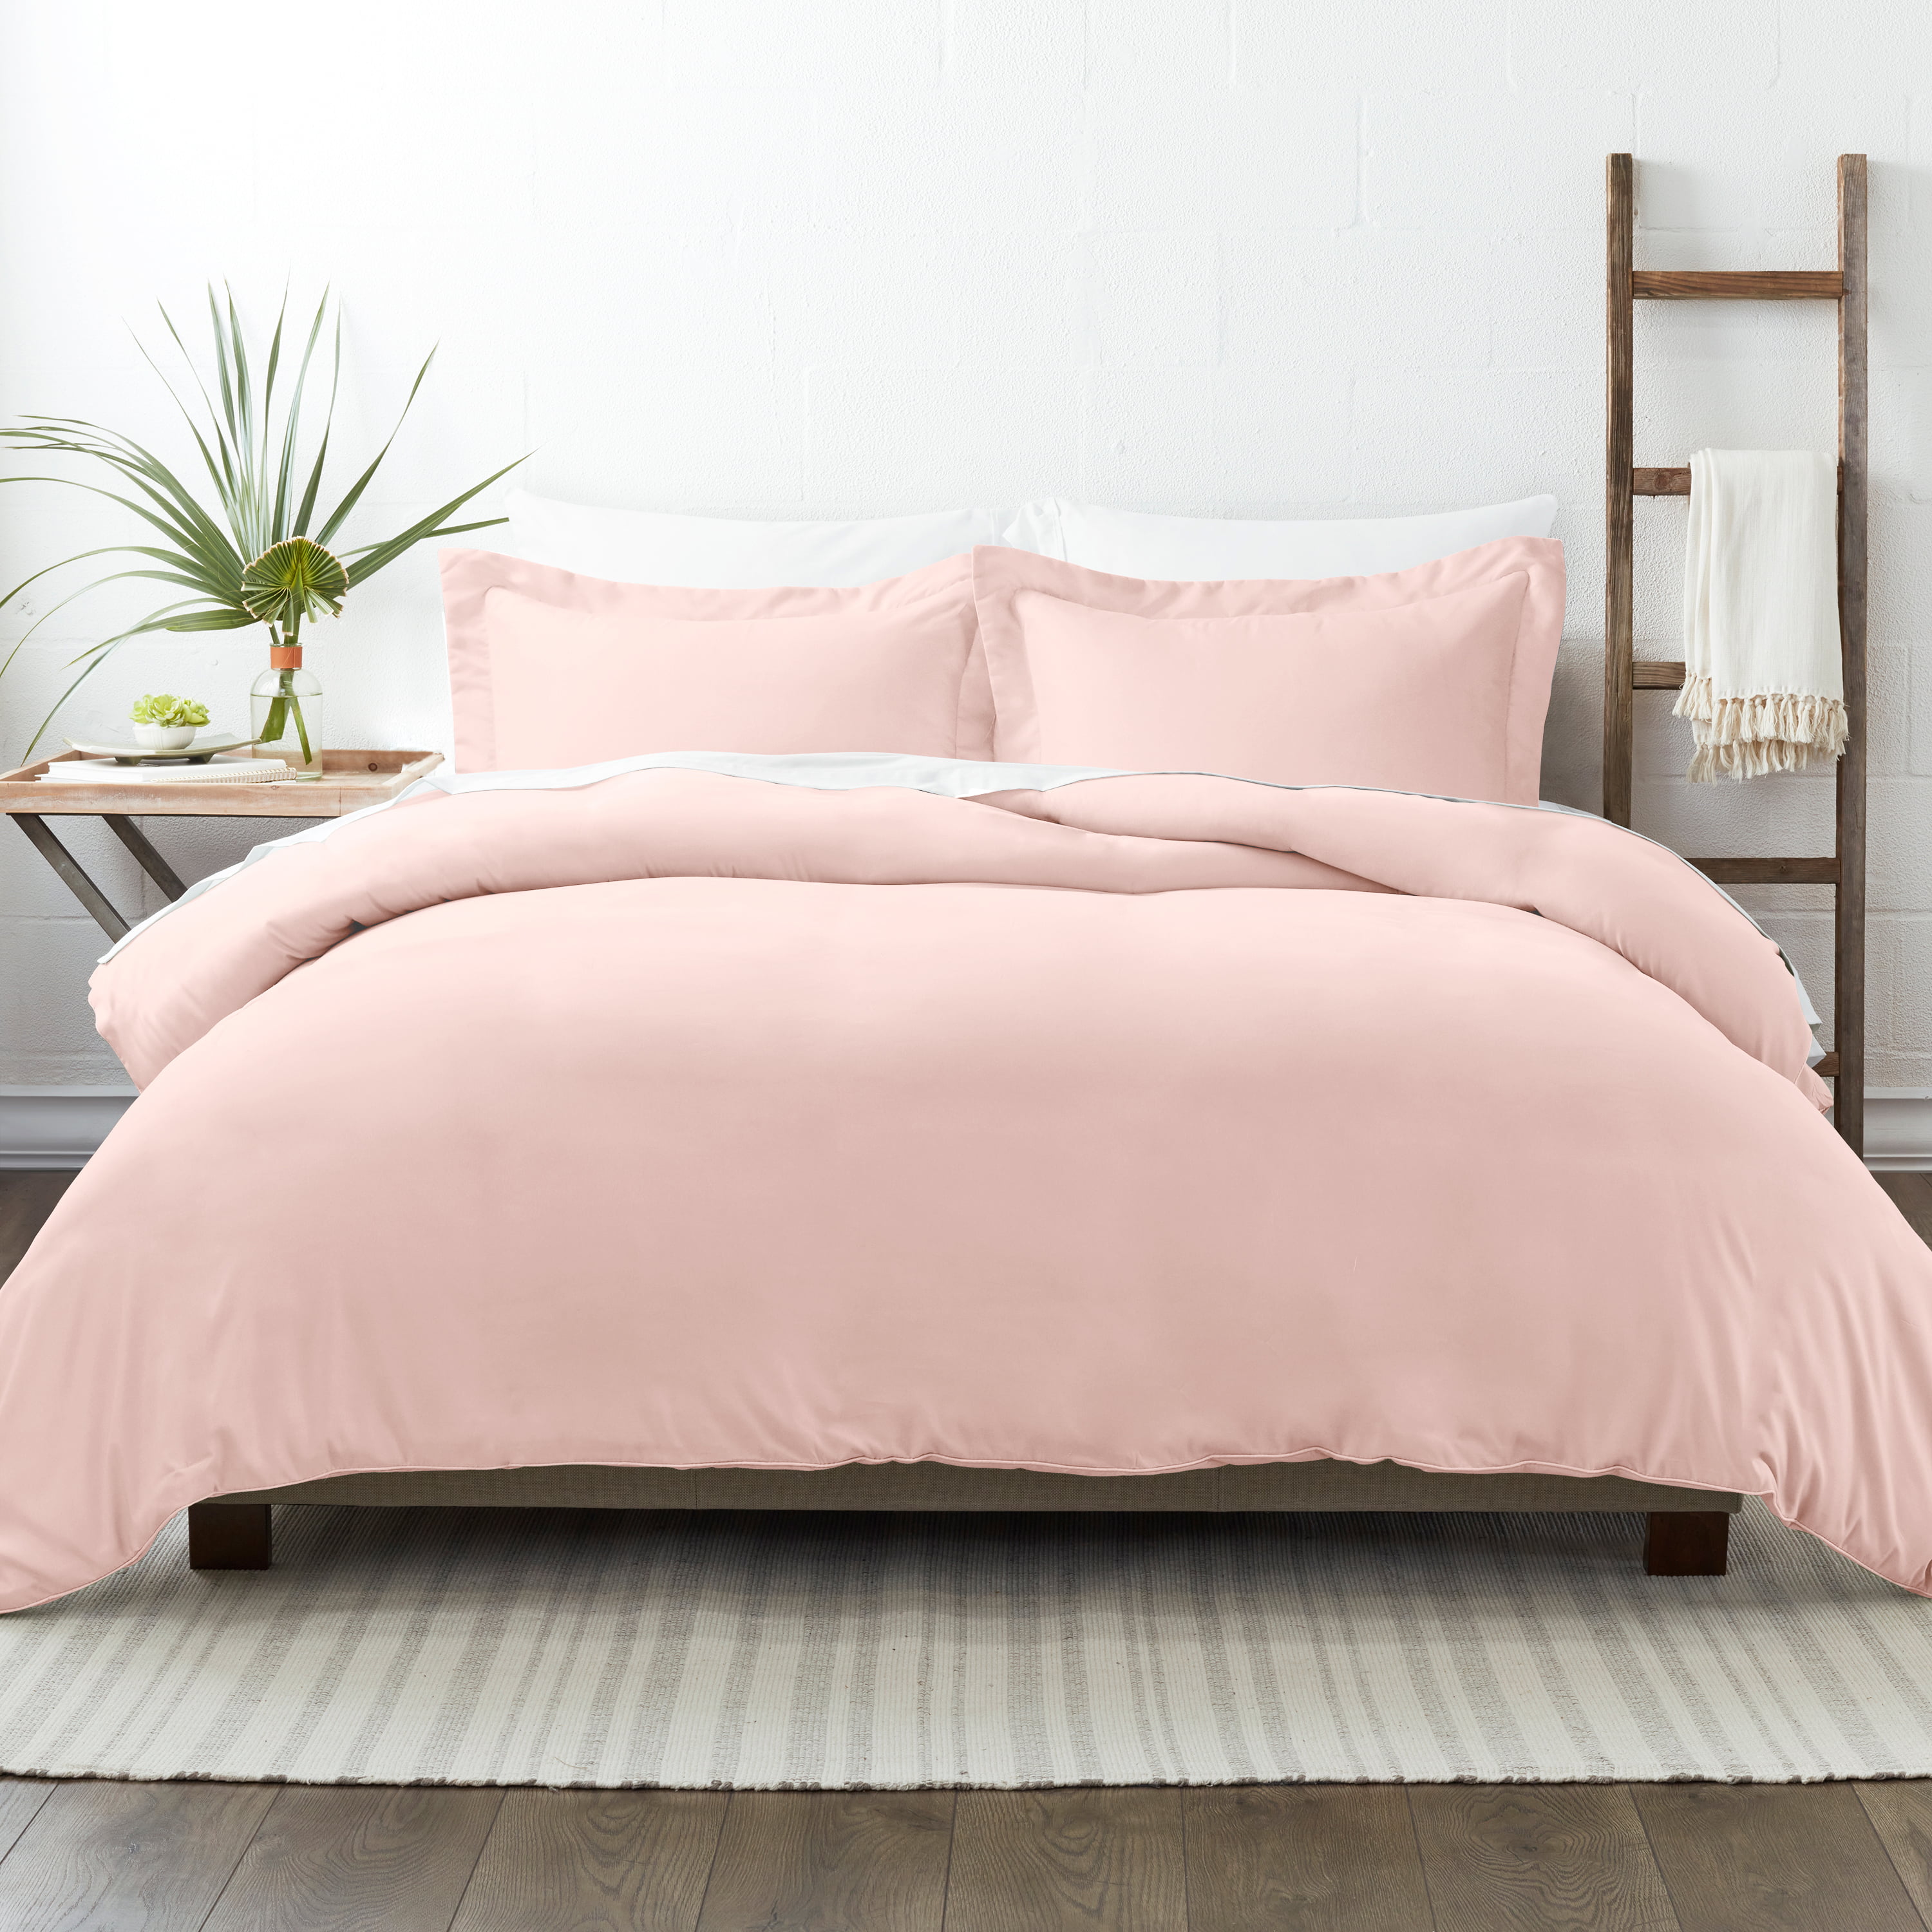 NEW Blush Pink Pom Pom Printed Bedding Duvet Set Cover Pillowcases All Sizes 